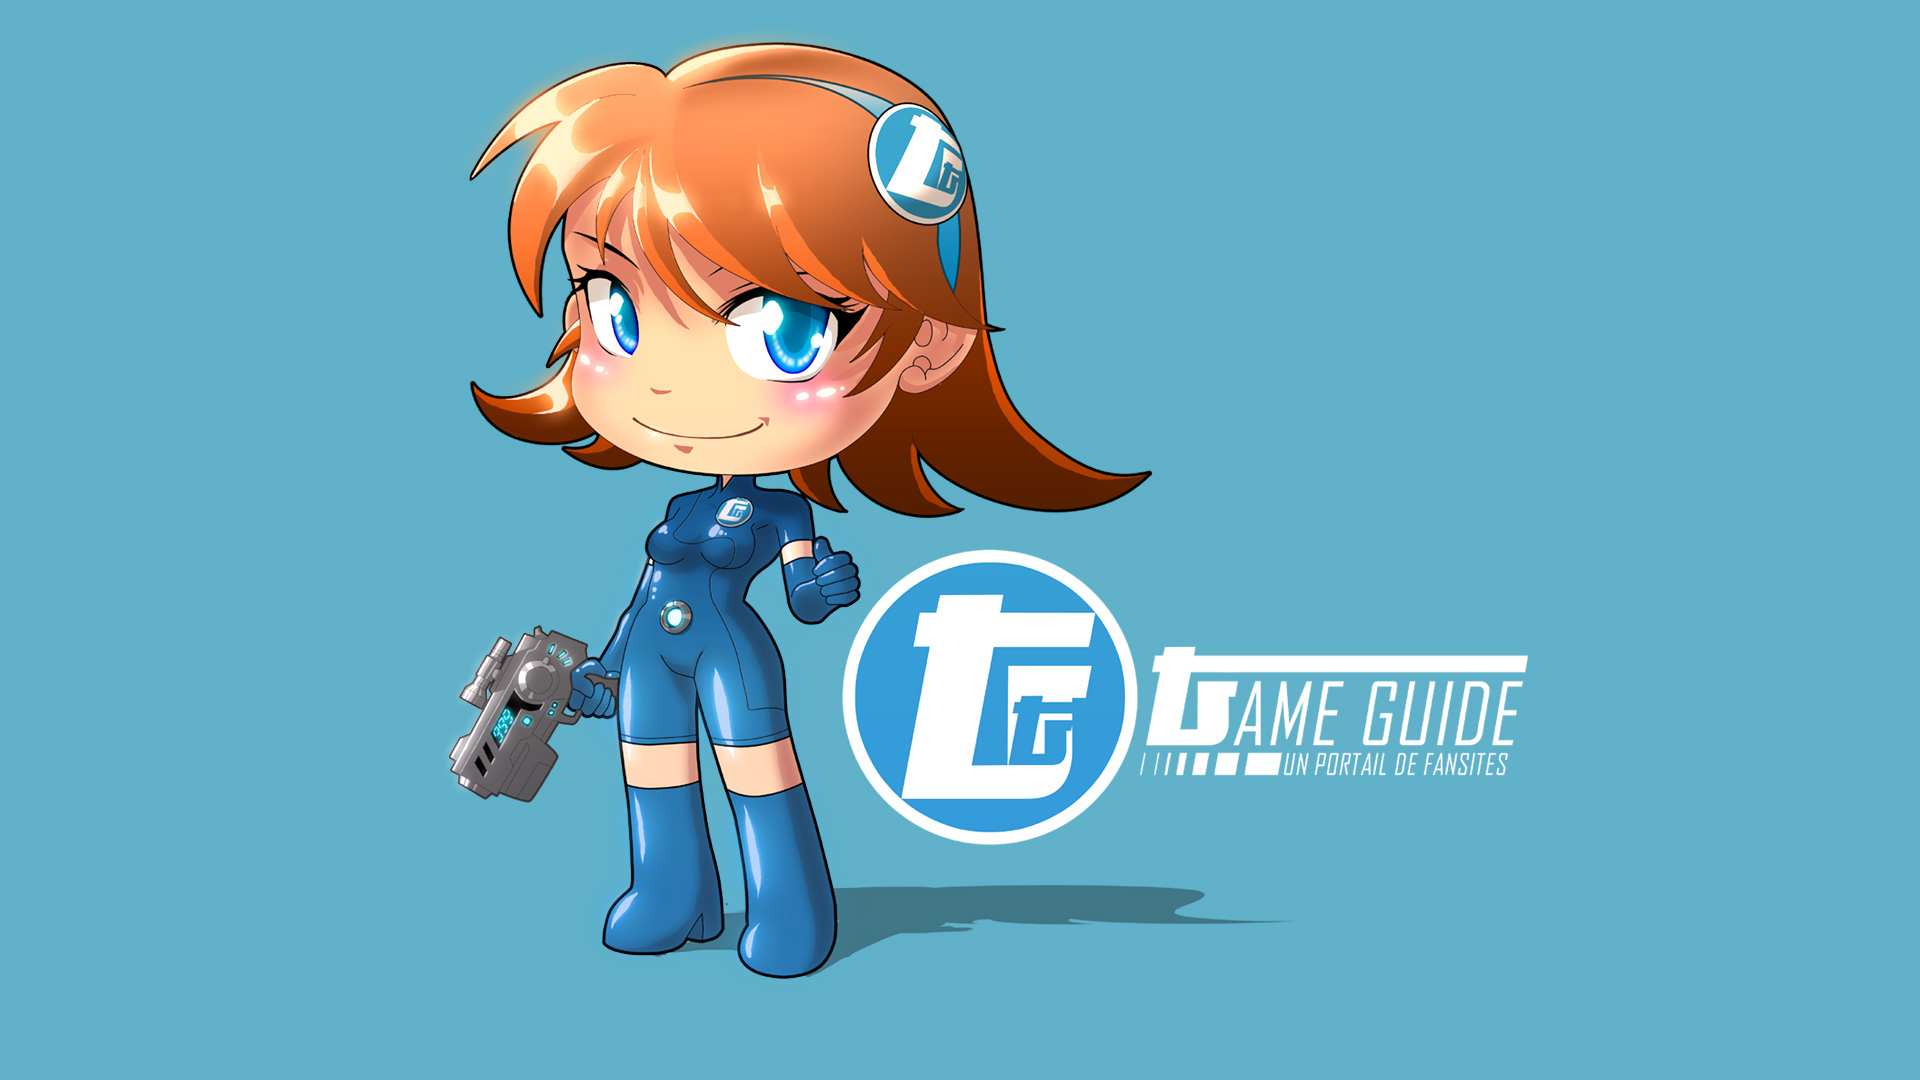 Game girl